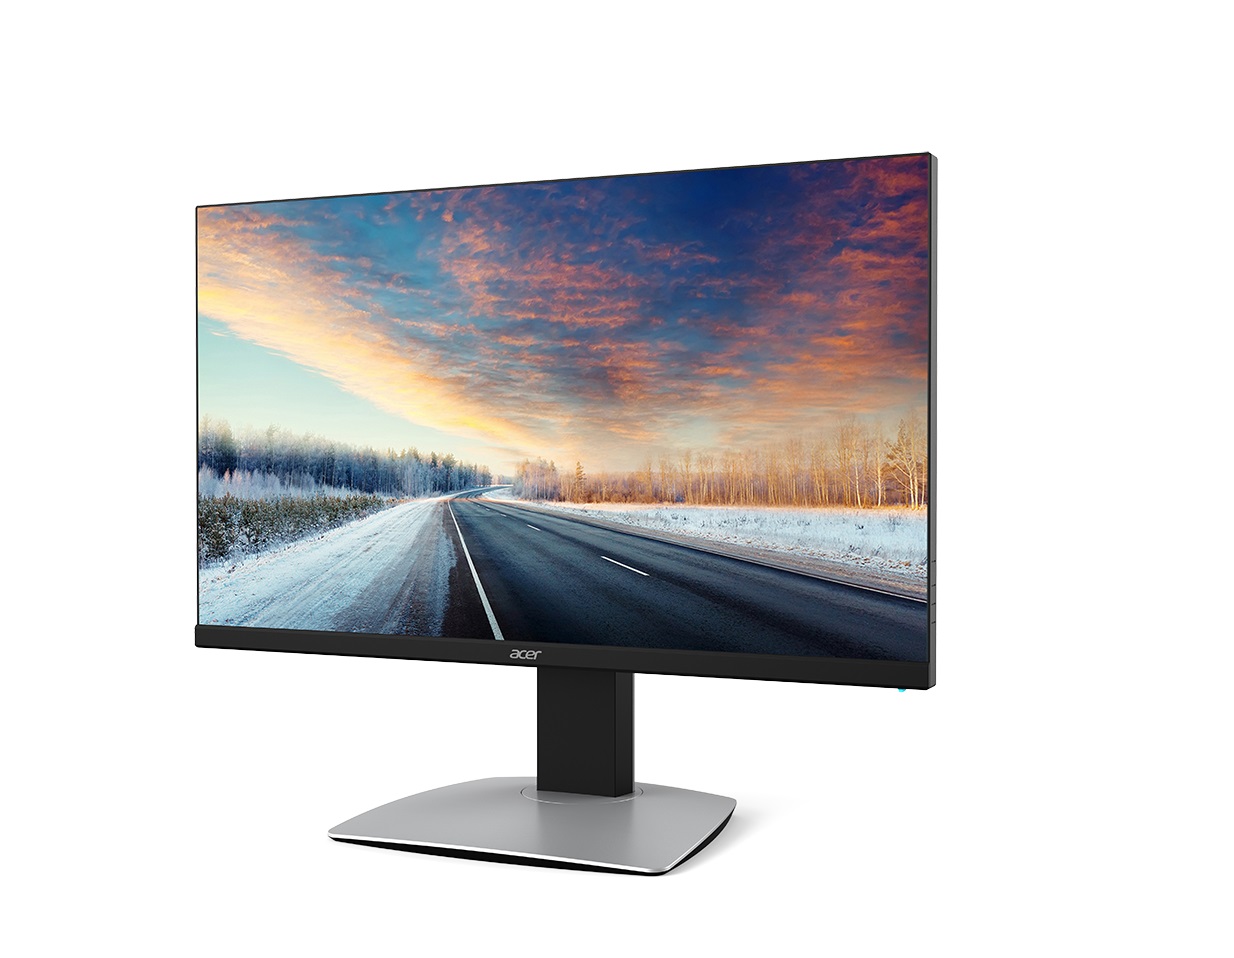 Immagine pubblicata in relazione al seguente contenuto: Acer introduce il monitor Ultra HD BM320 dotato di un pannello 4K da 32-inch | Nome immagine: news24328_Acer-4K-BM230_1.jpg